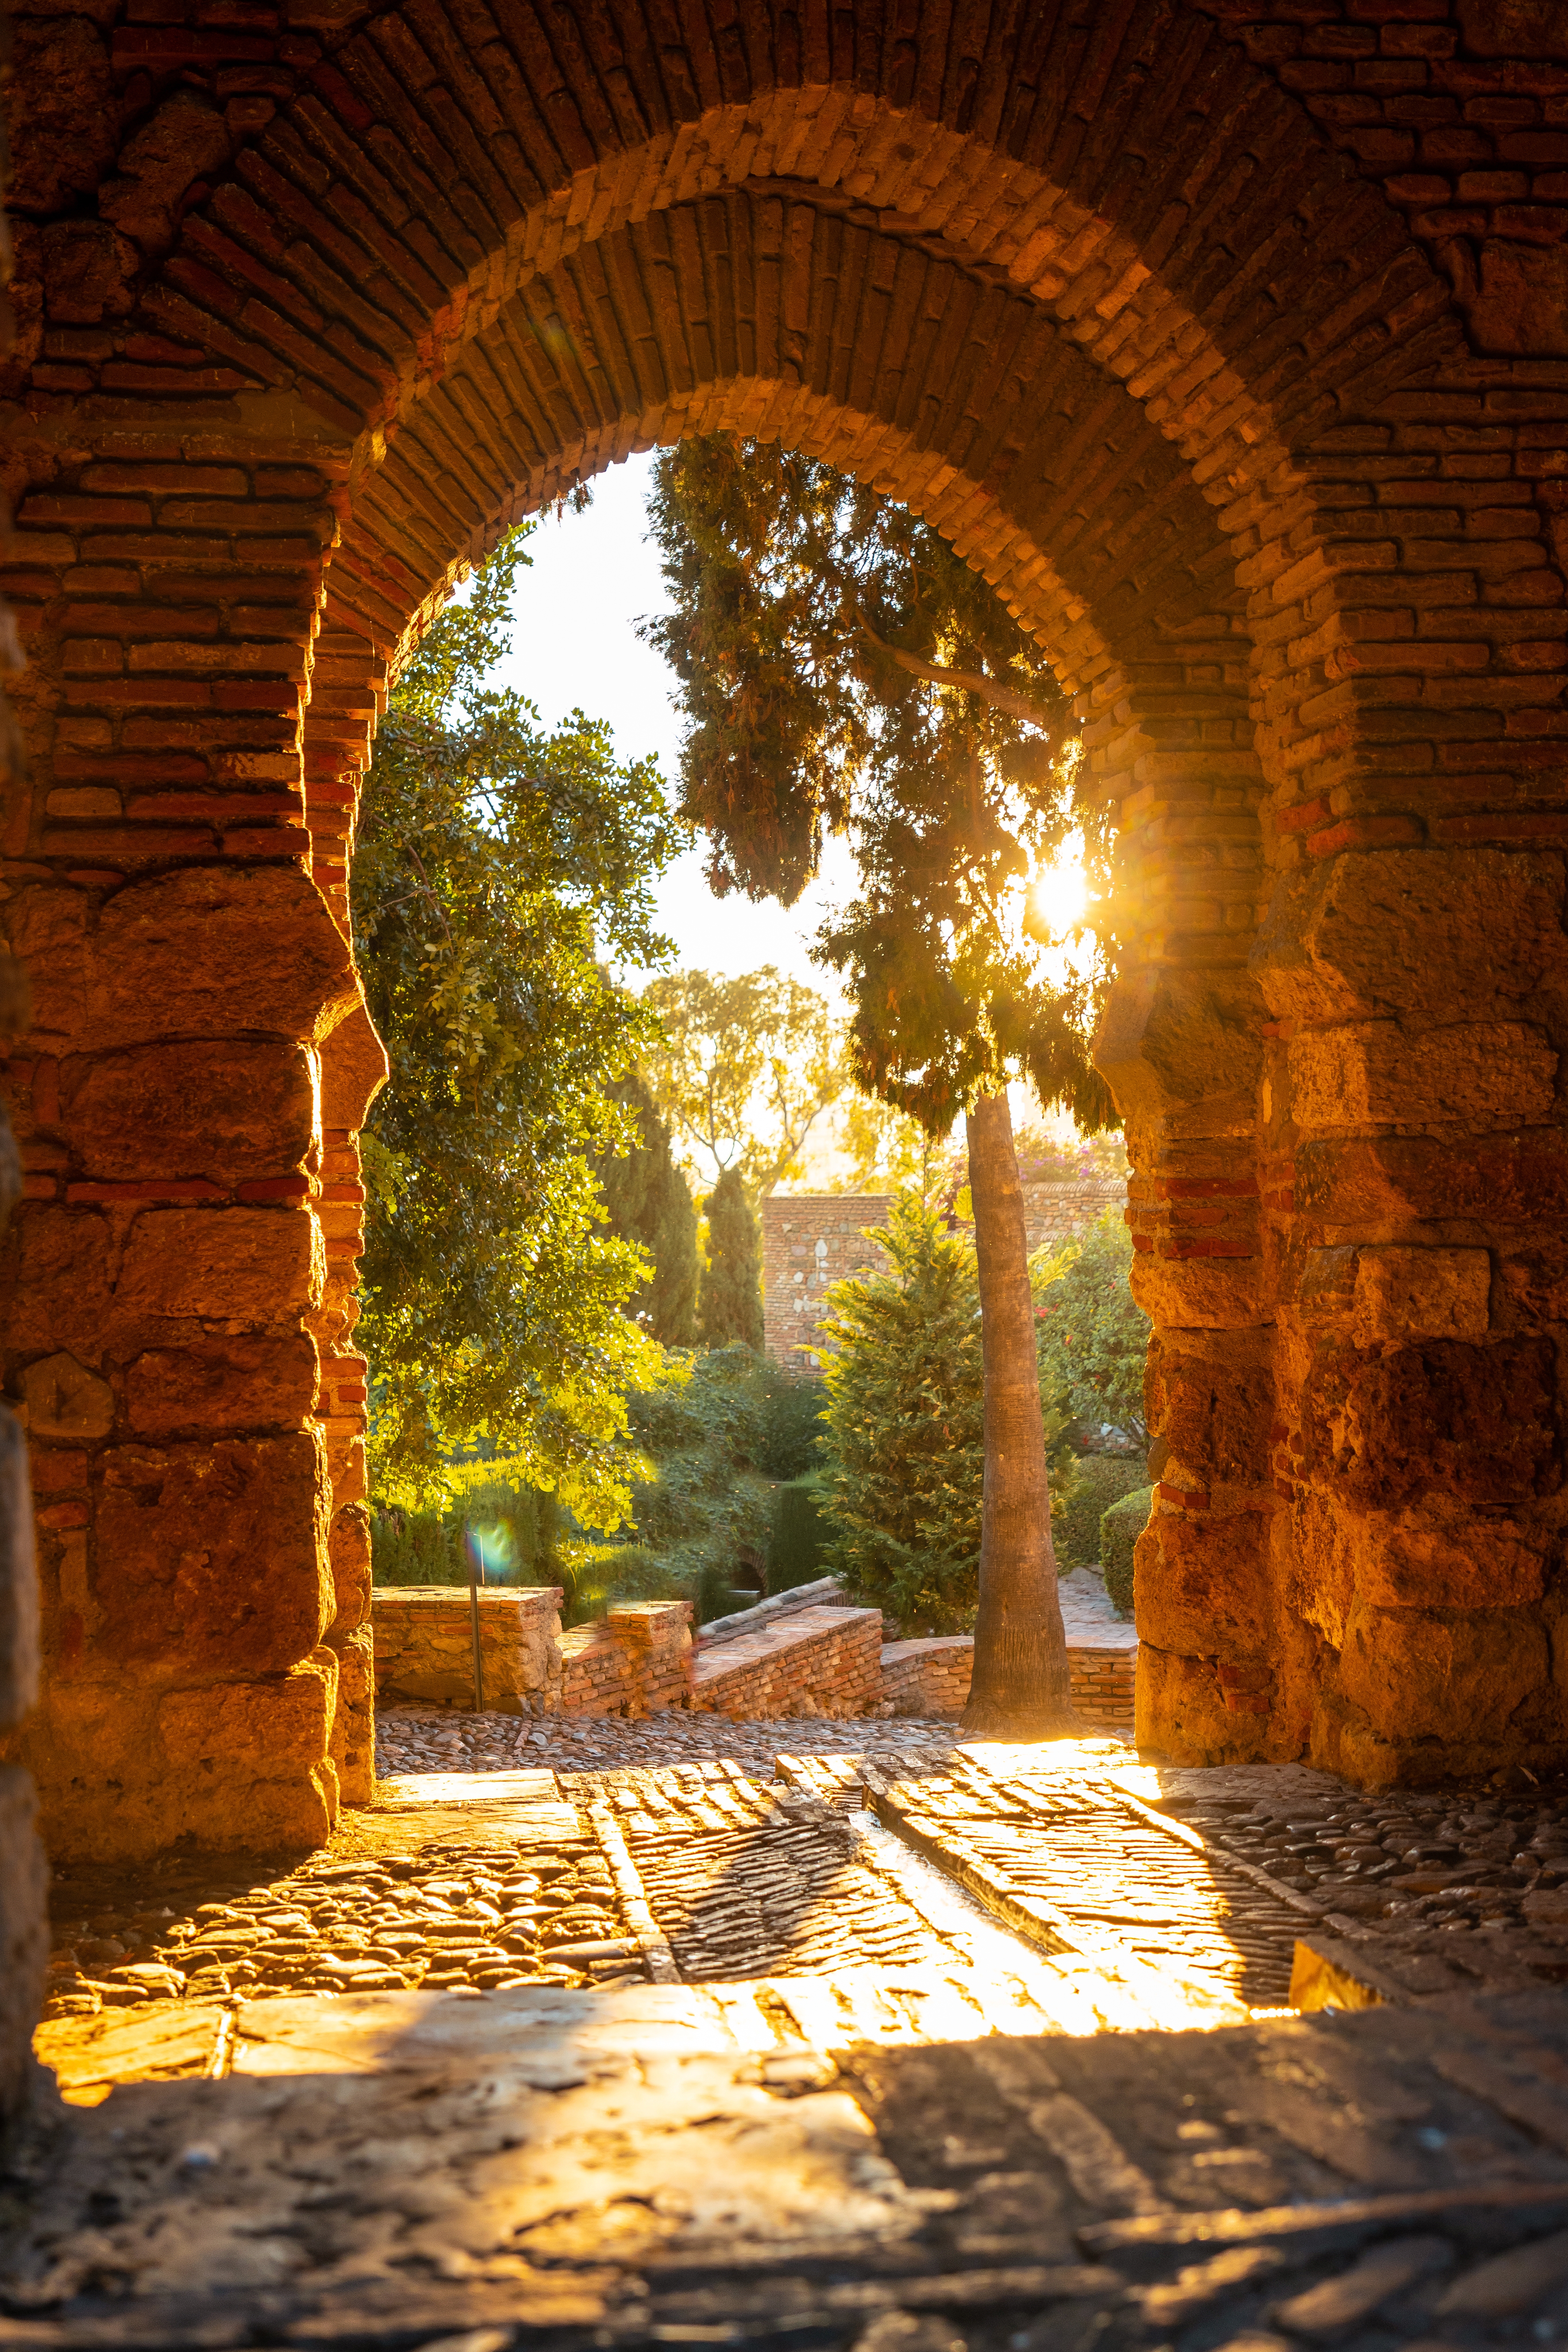 The Alcazaba is Málaga’s most-visited monument